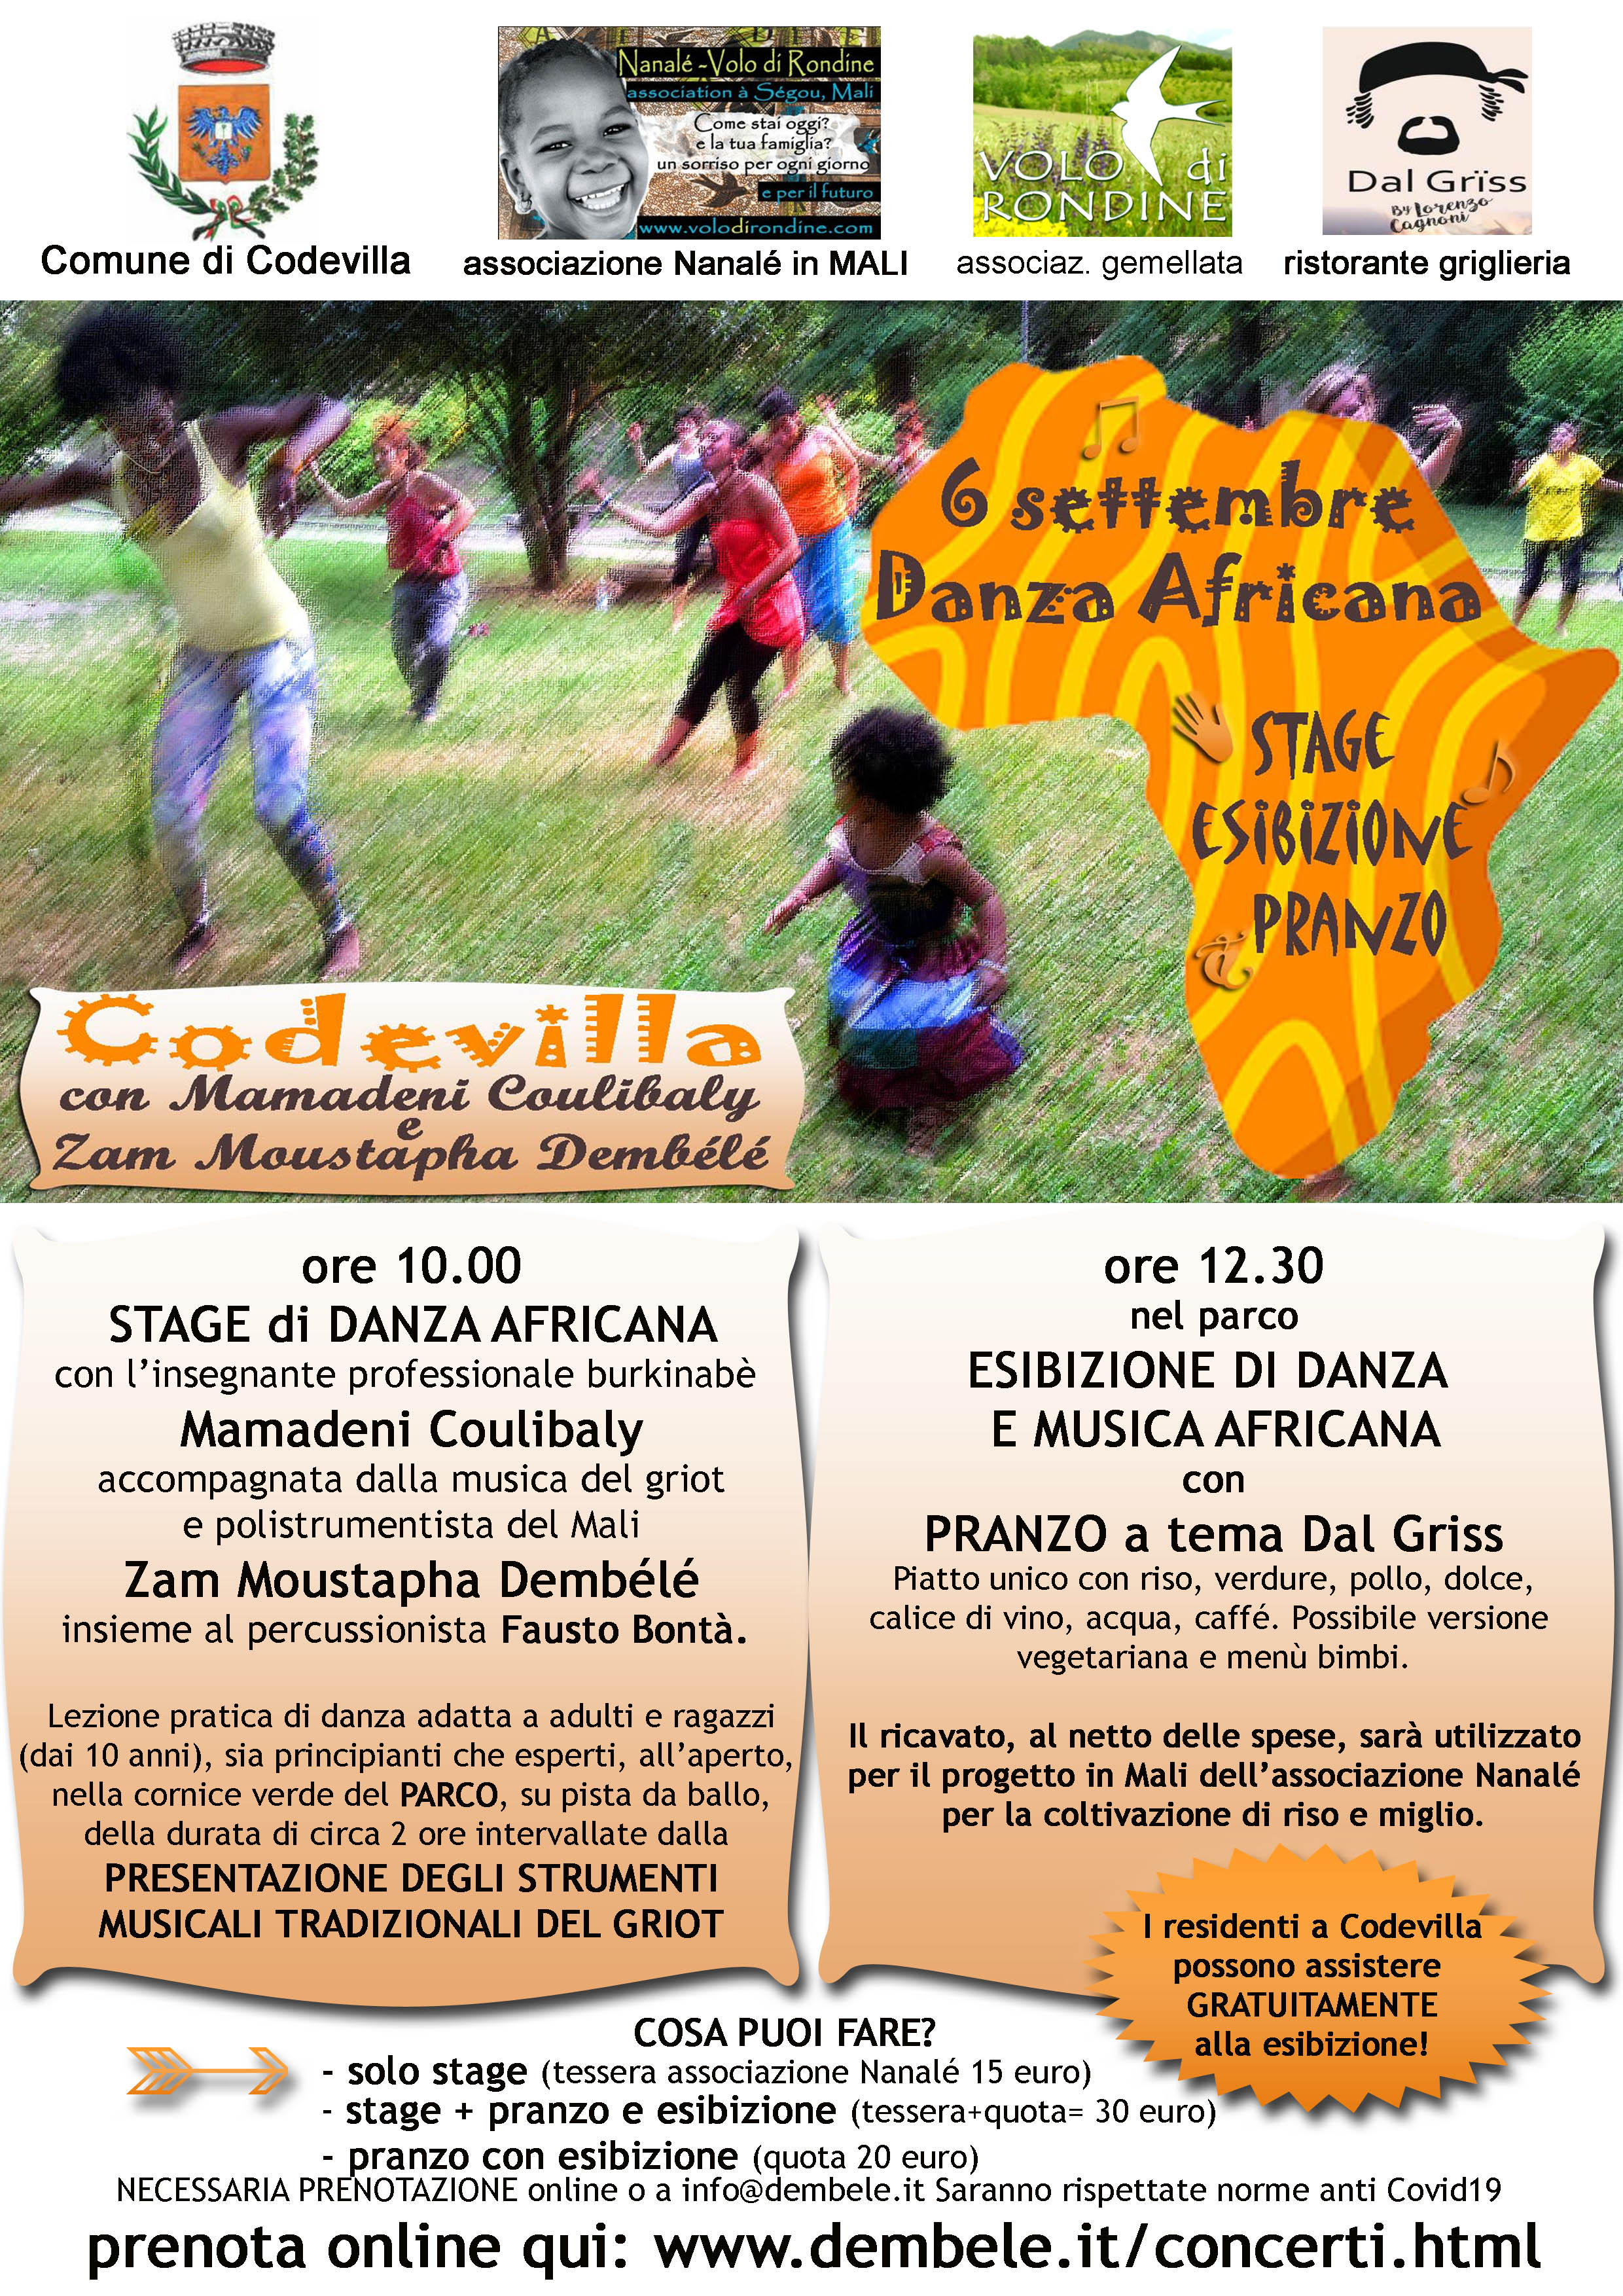 danza africana stage, esibizione pranzo codevilla 6 settembre